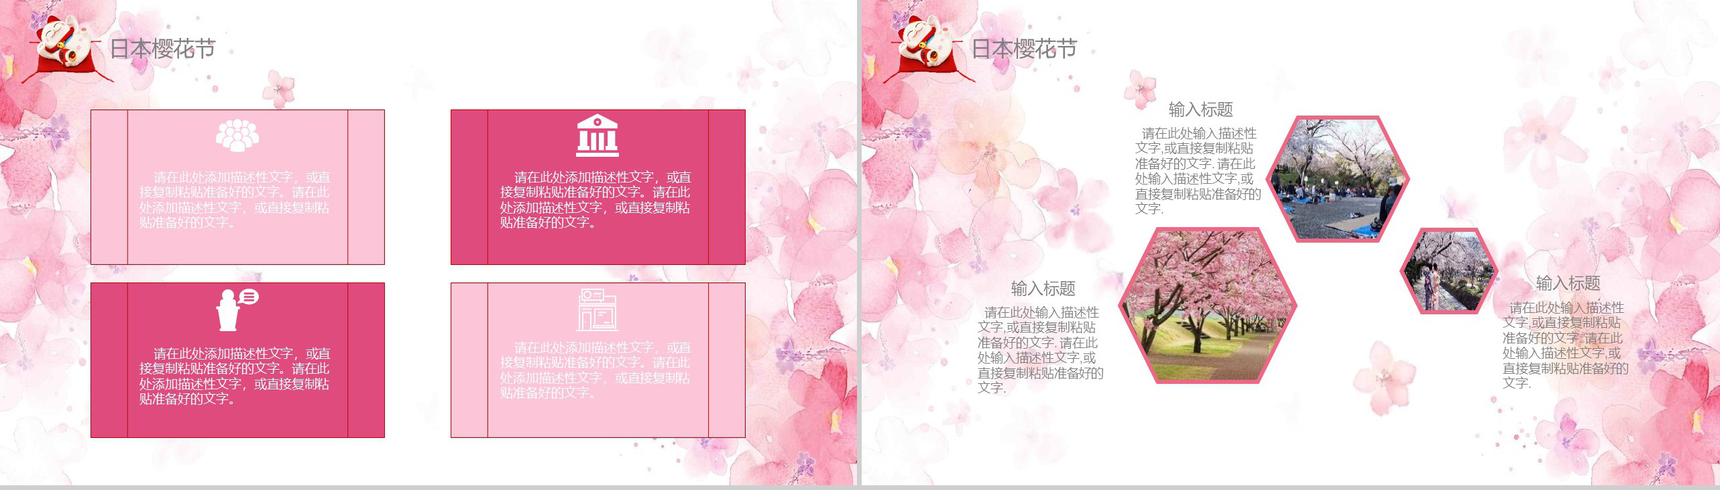 粉色日系和风日本文化介绍PPT模板-13